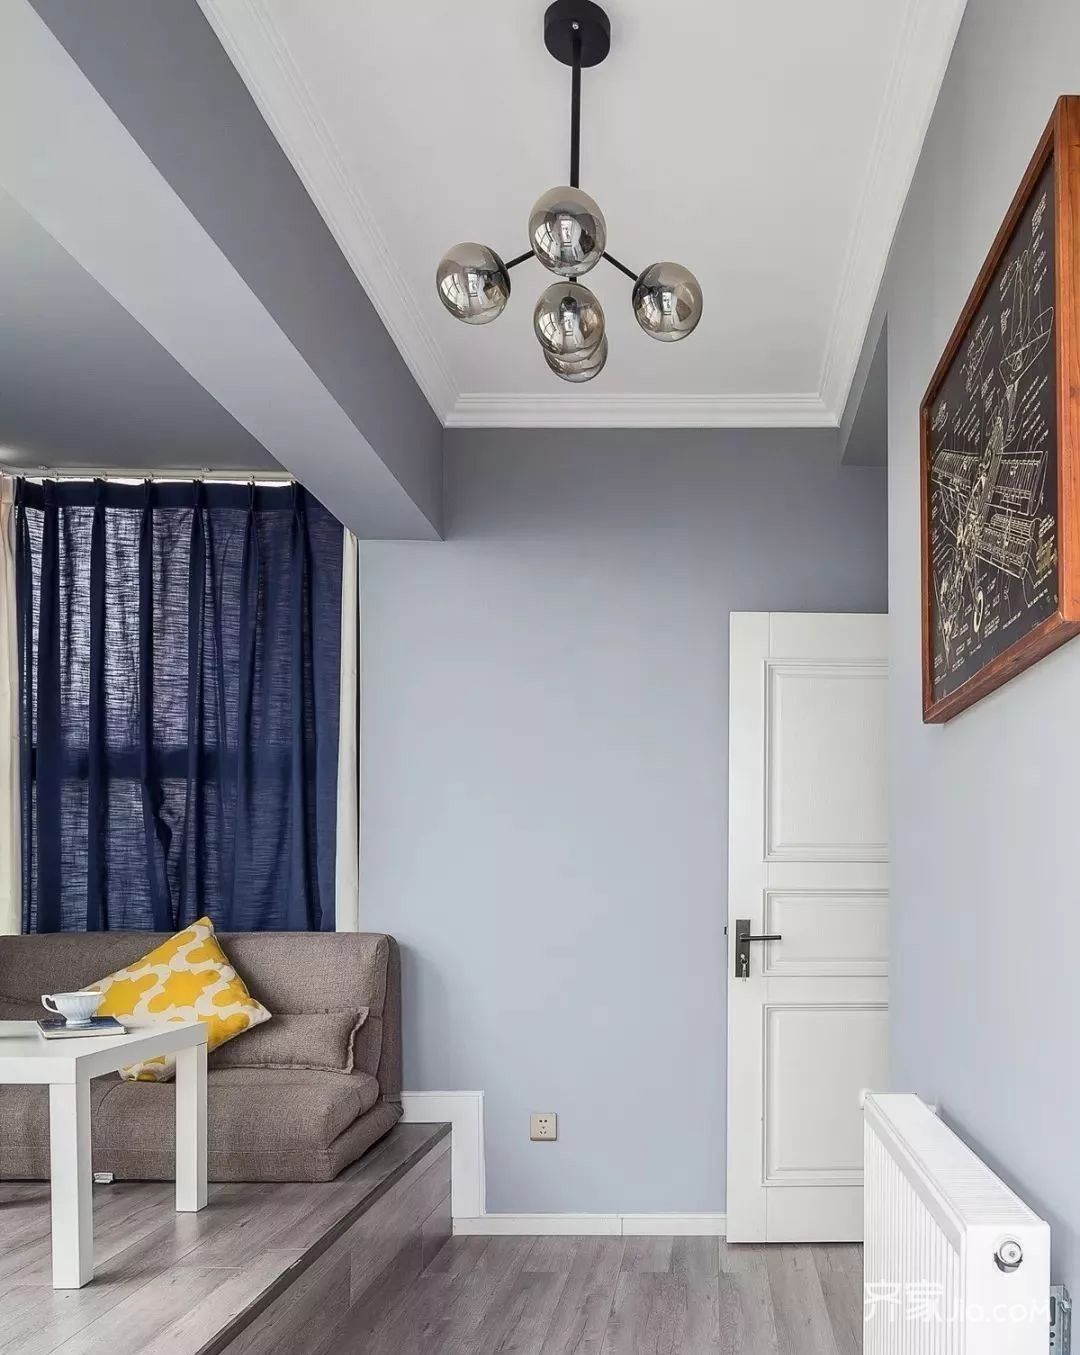 浅蓝和白色相间,比较清新舒适,墙面和客厅一样采用的灰色乳胶漆